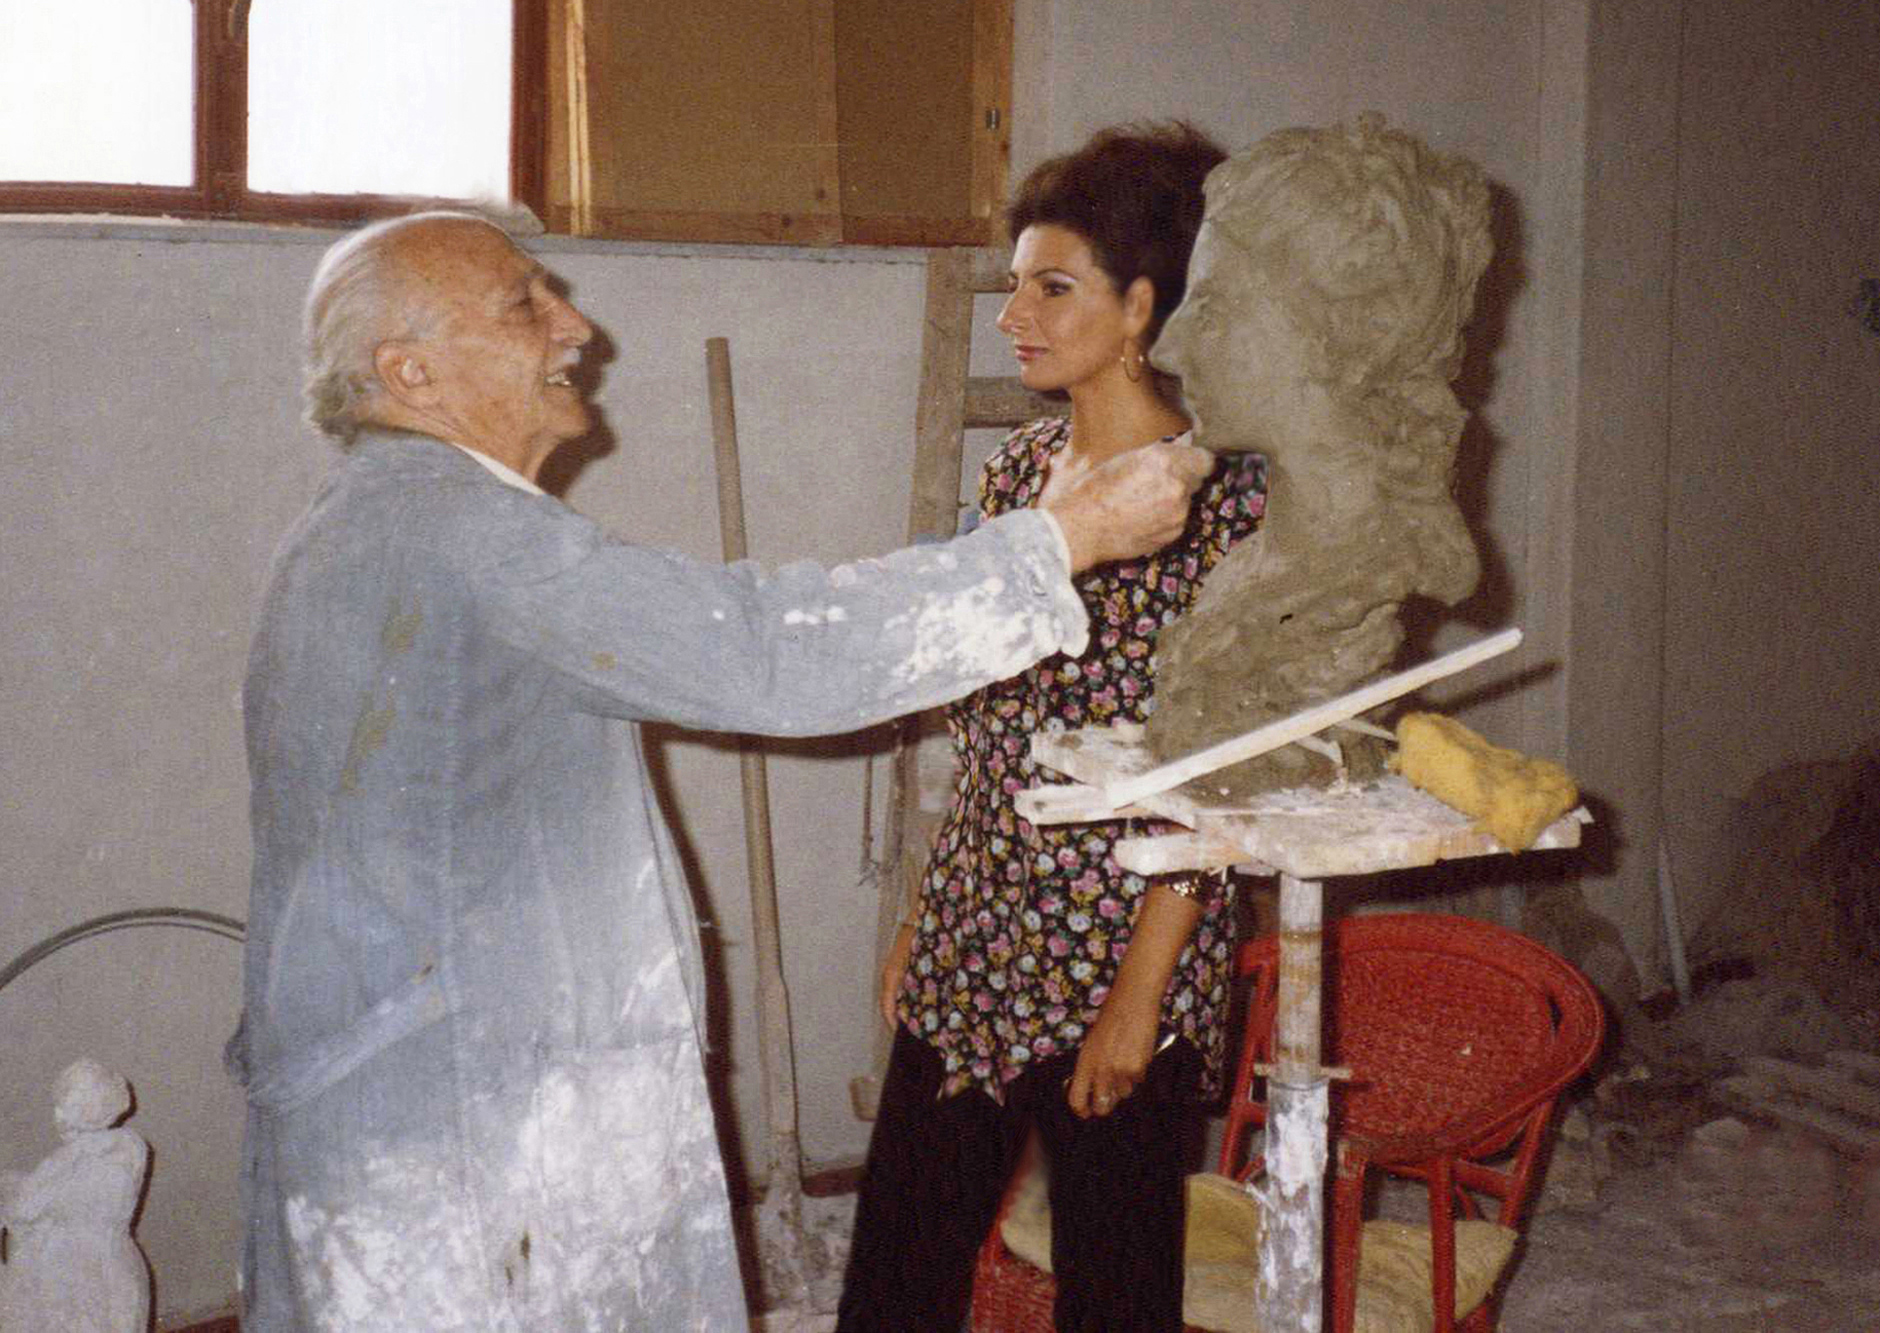 Lucia Aliberti with the sculptor Salvatore Giordano⚘Studio⚘Sculpture⚘Profile⚘:http://www.luciaaliberti.it #luciaaliberti #salvatoregiordano #sculpture #profile